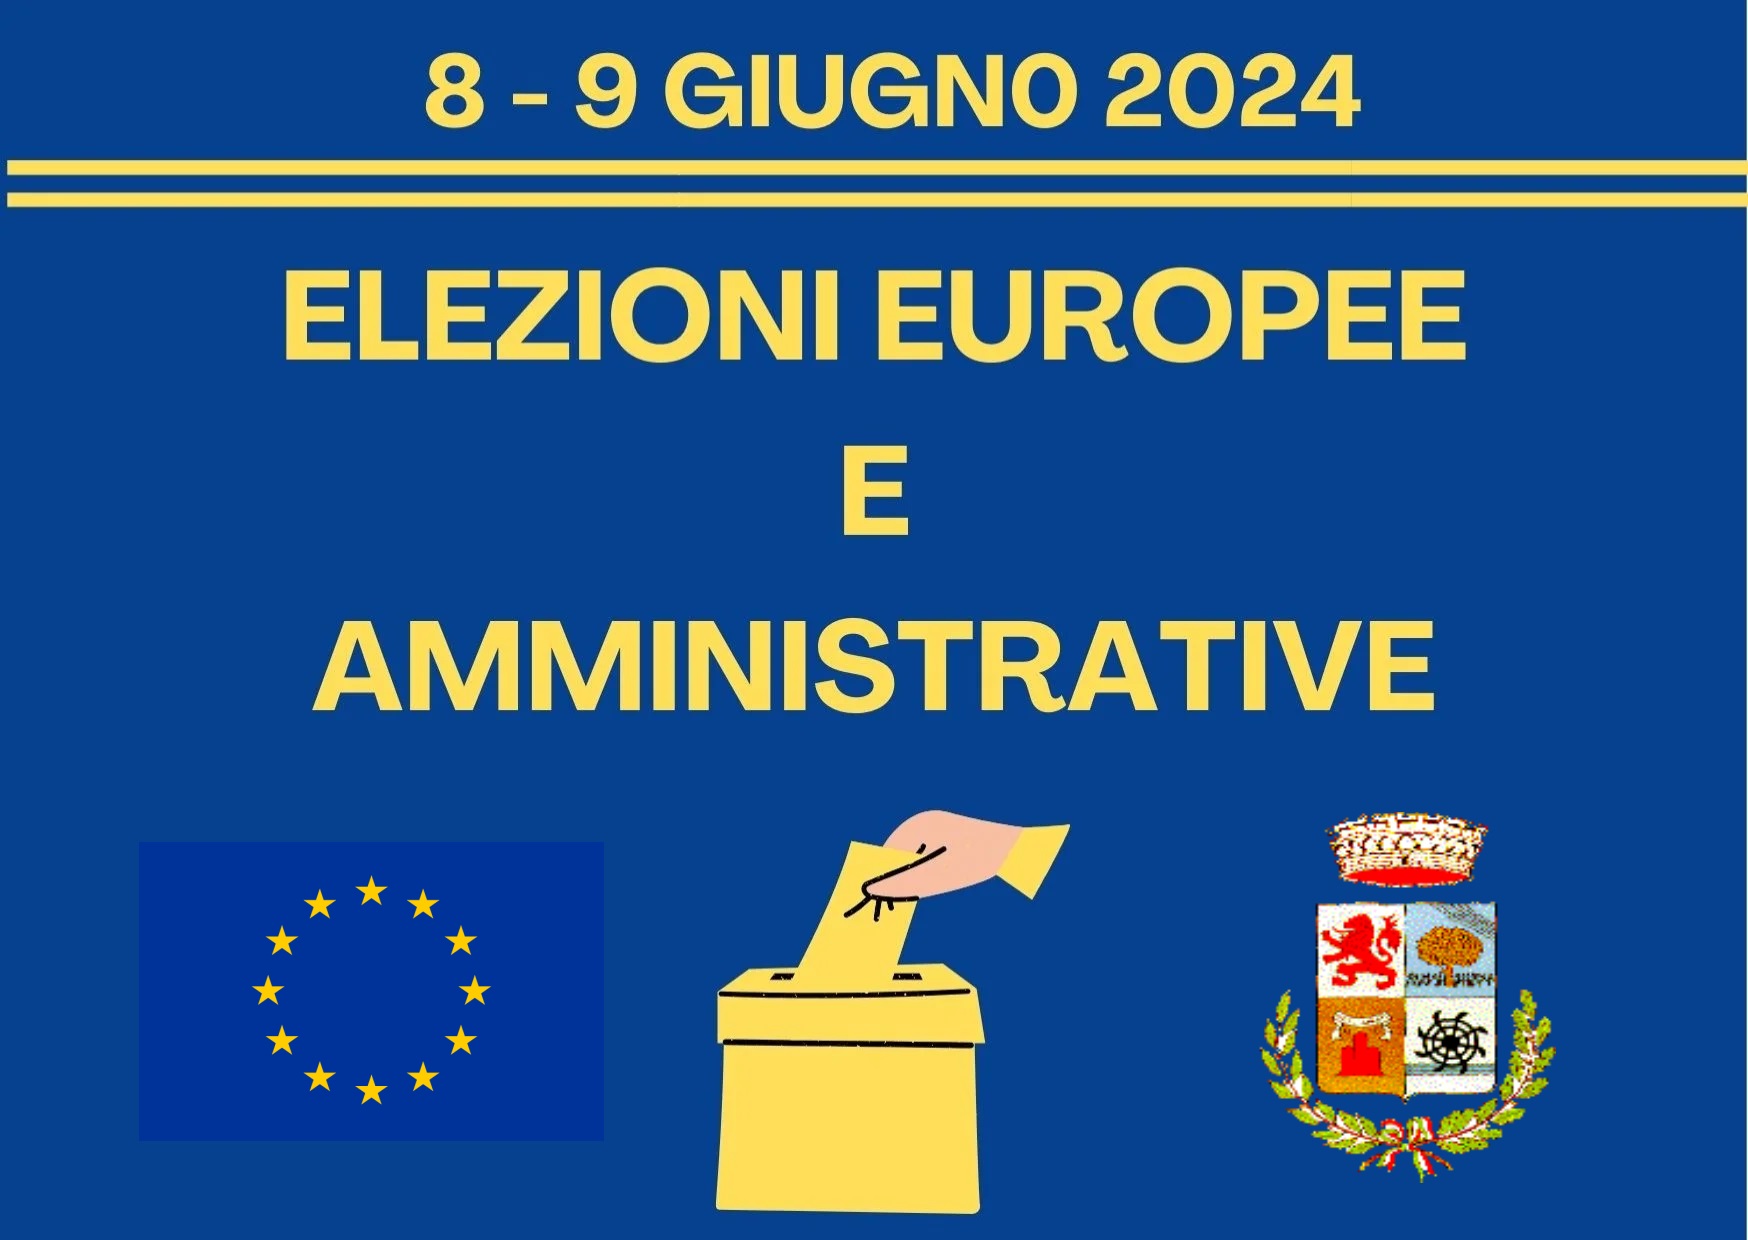 ELEZIONI EUROPEE 2024 - orari apertura straordinaria Ufficio Elettorale